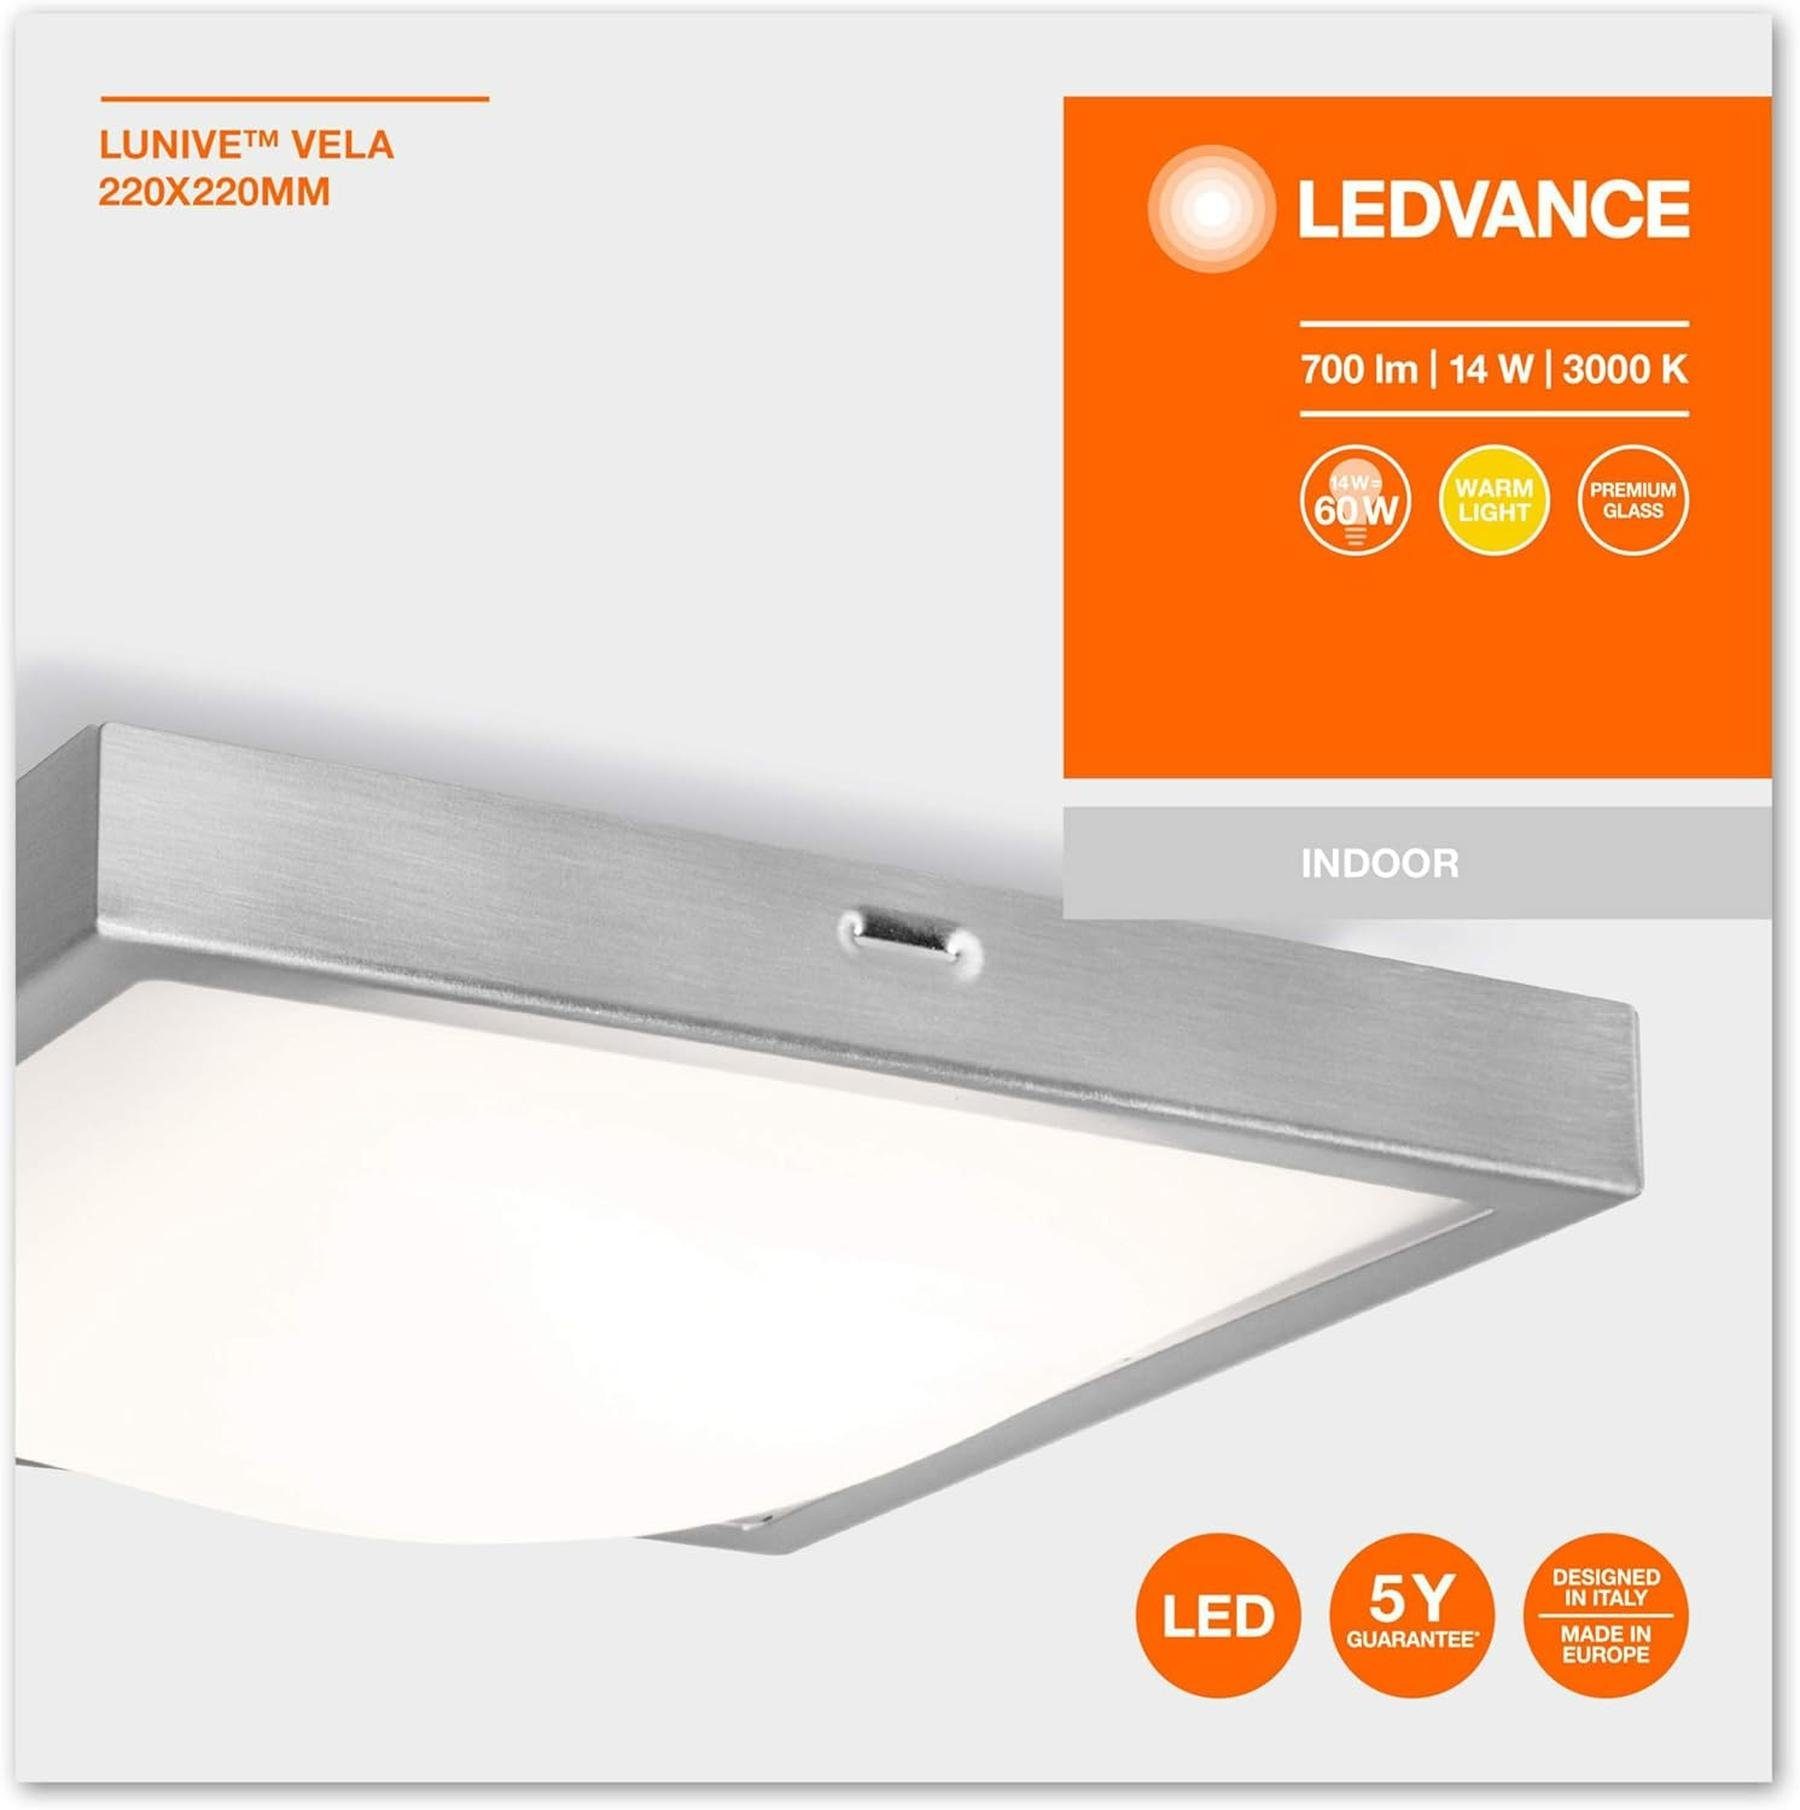 Ledvance Wandleuchte LEDVANCE LED Energieeffizient und Deckenleuchte, Wand- Warmweiß